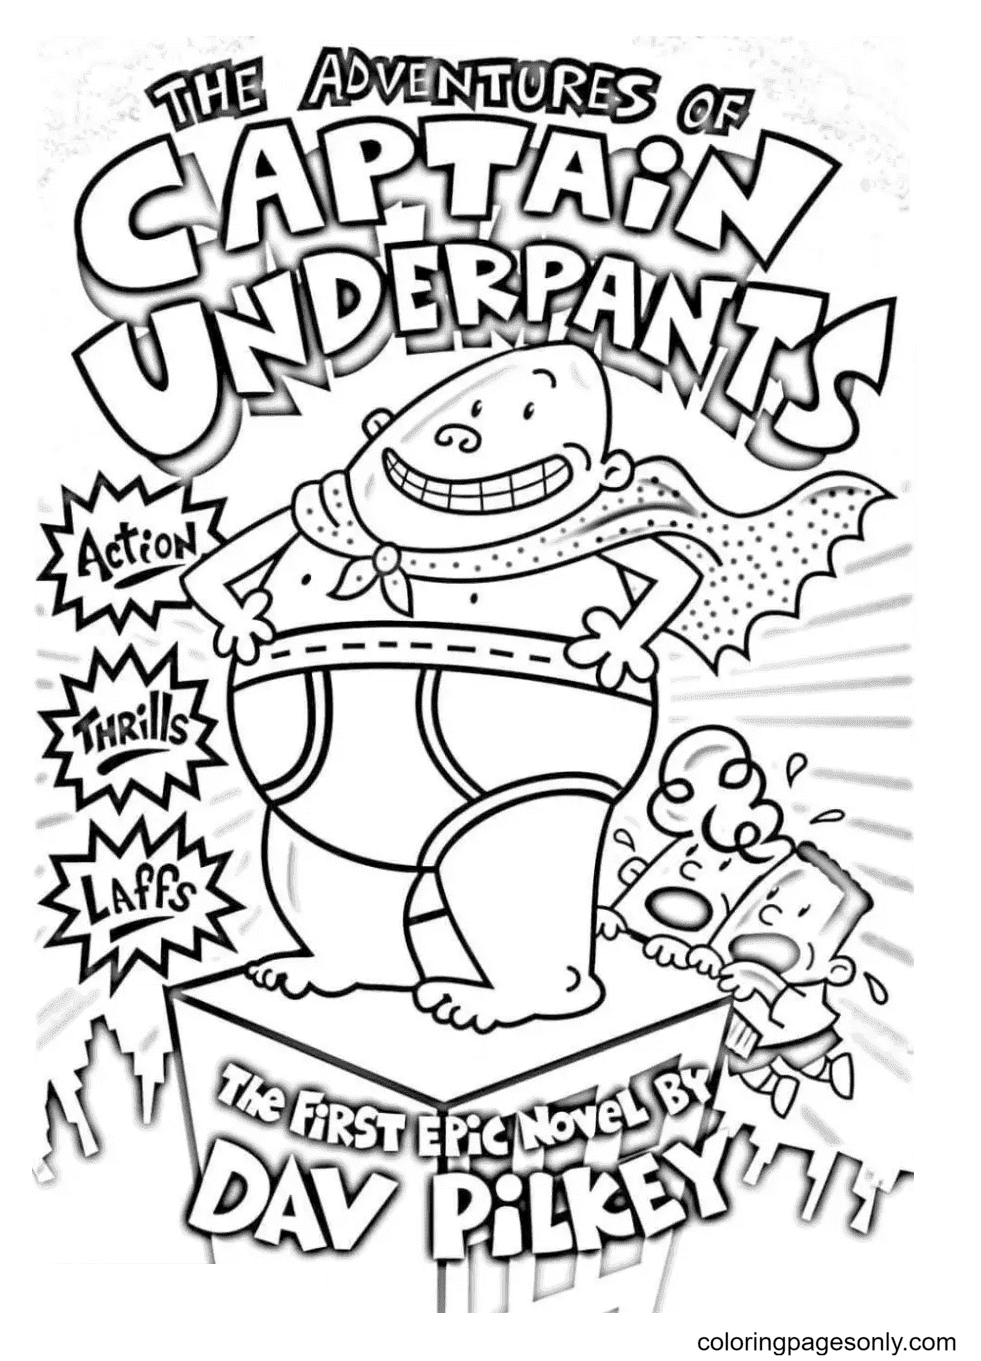 Captain Underpants avec George Beard et Harold Hutchins de Captain Underpants